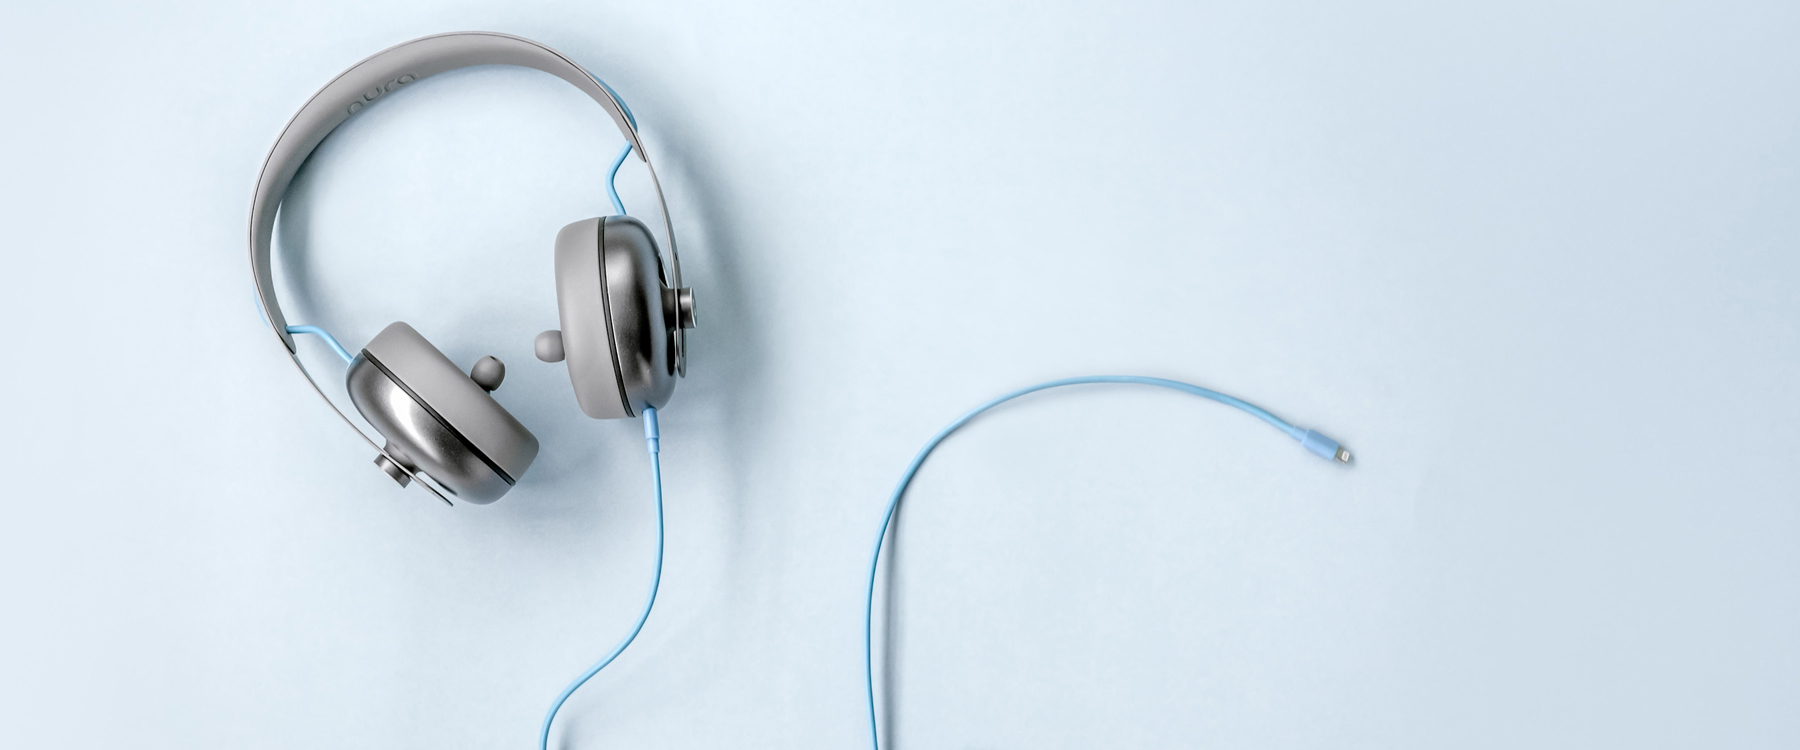 nura-headphones-project-office-design-designboom-header.jpg